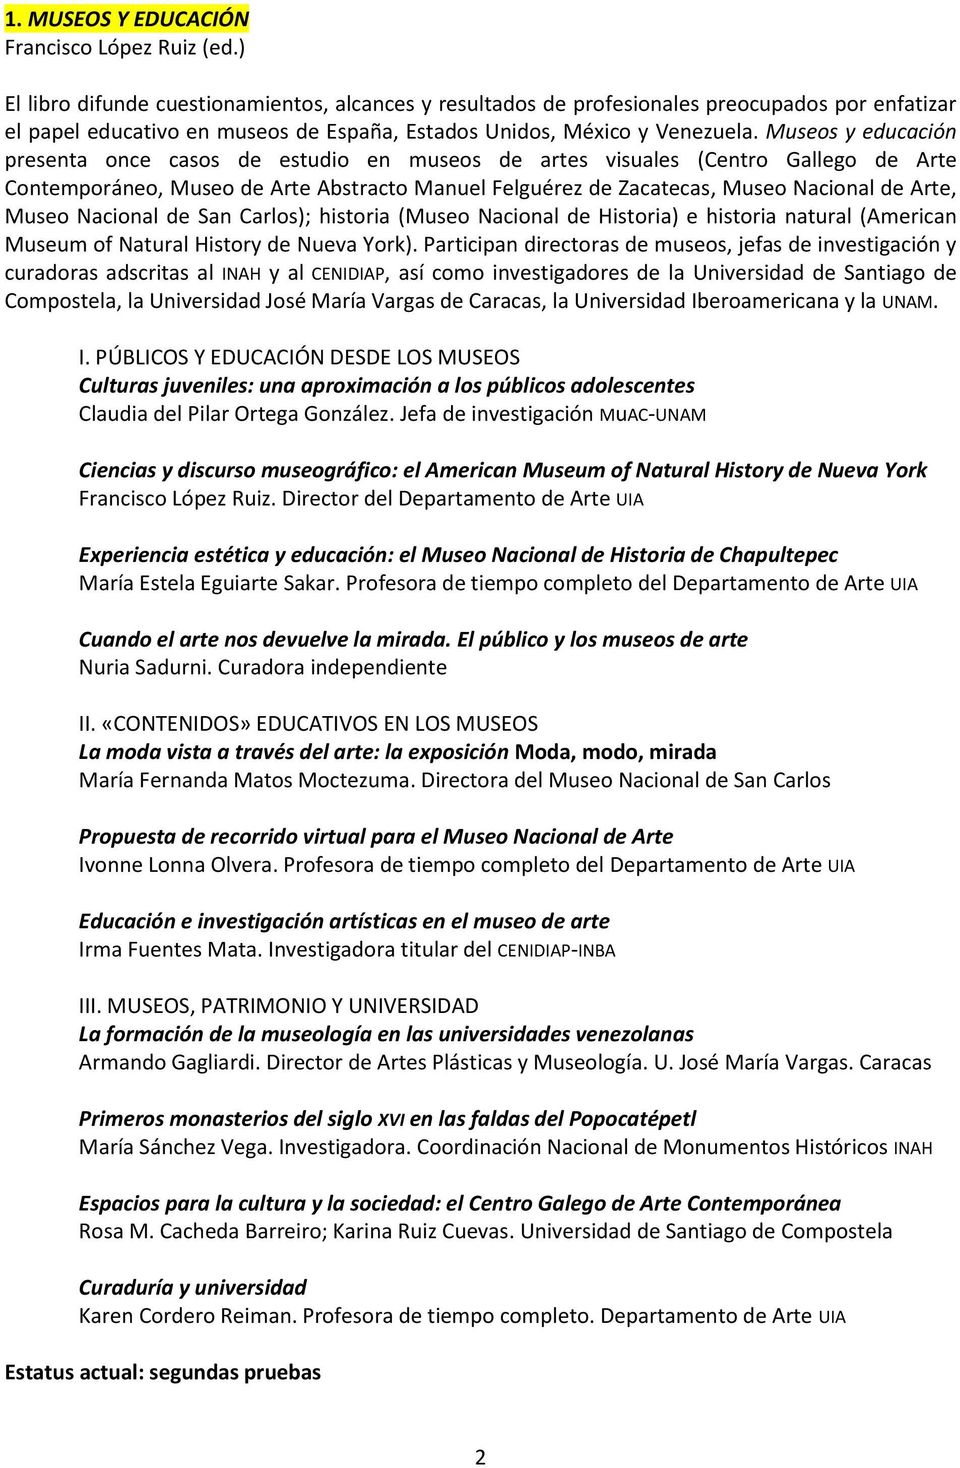 Museos y educación presenta once casos de estudio en museos de artes visuales (Centro Gallego de Arte Contemporáneo, Museo de Arte Abstracto Manuel Felguérez de Zacatecas, Museo Nacional de Arte,